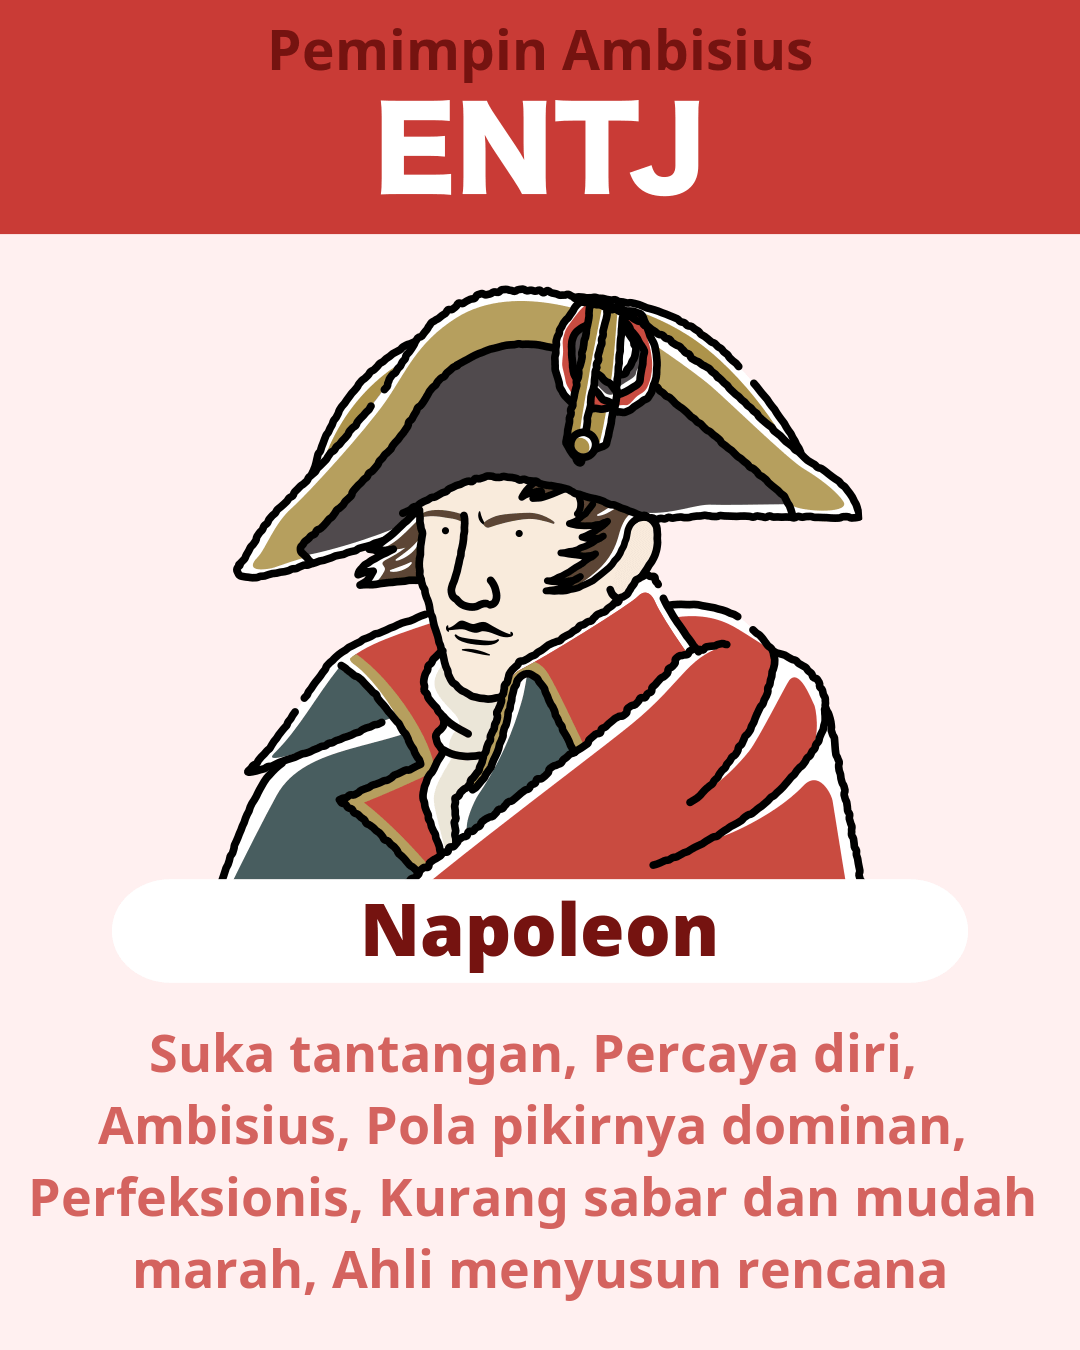 Napoleon - ENTJ